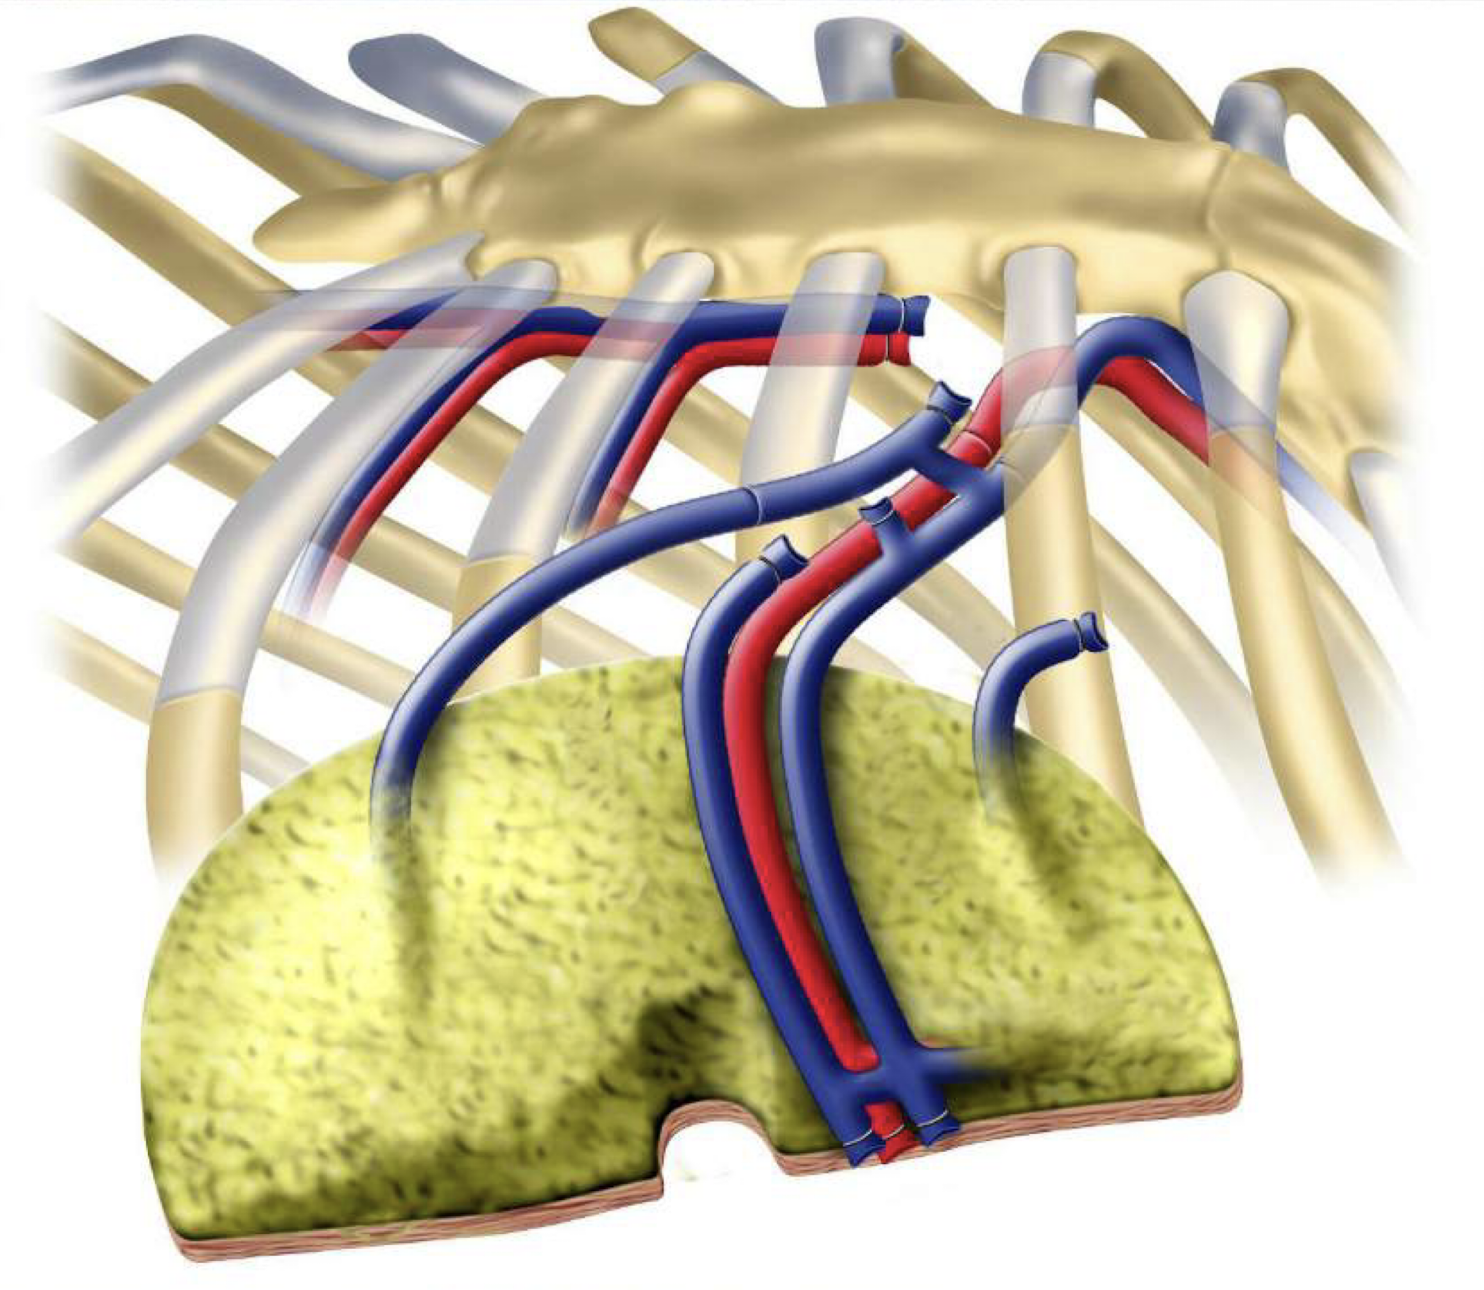 De bloedvaten van de weefselflap zijn verbonden met vaten in uw borstkas, zodat het bloed in en uit de flap kan stromen.